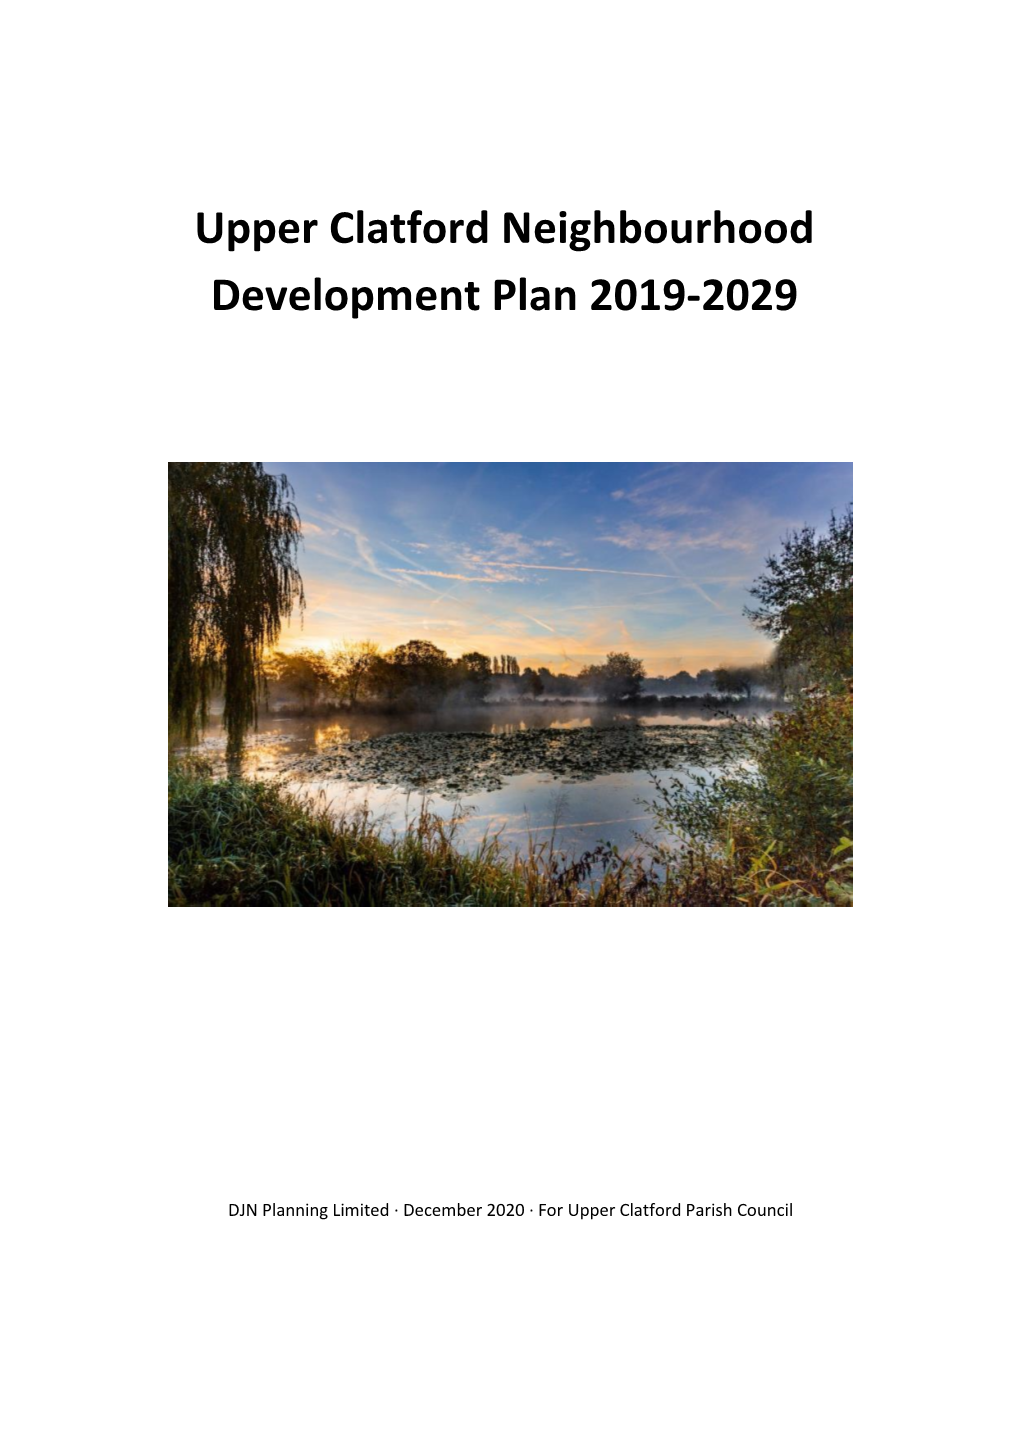 Upper Clatford Referendum Plan